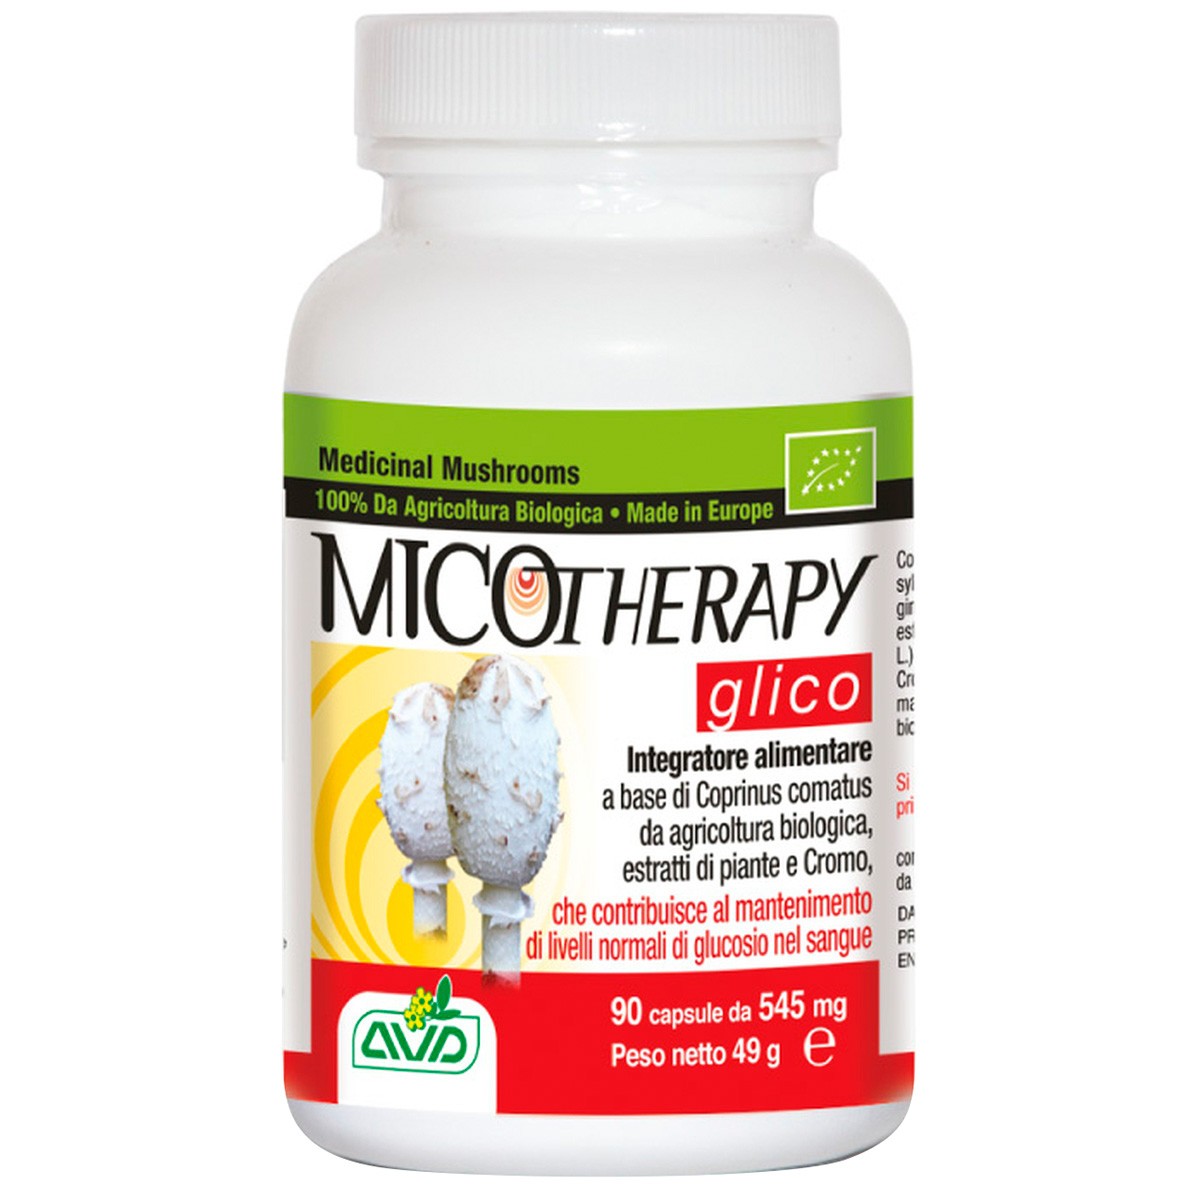 Micoteraphy glico 545 mg 90 capsulas avd